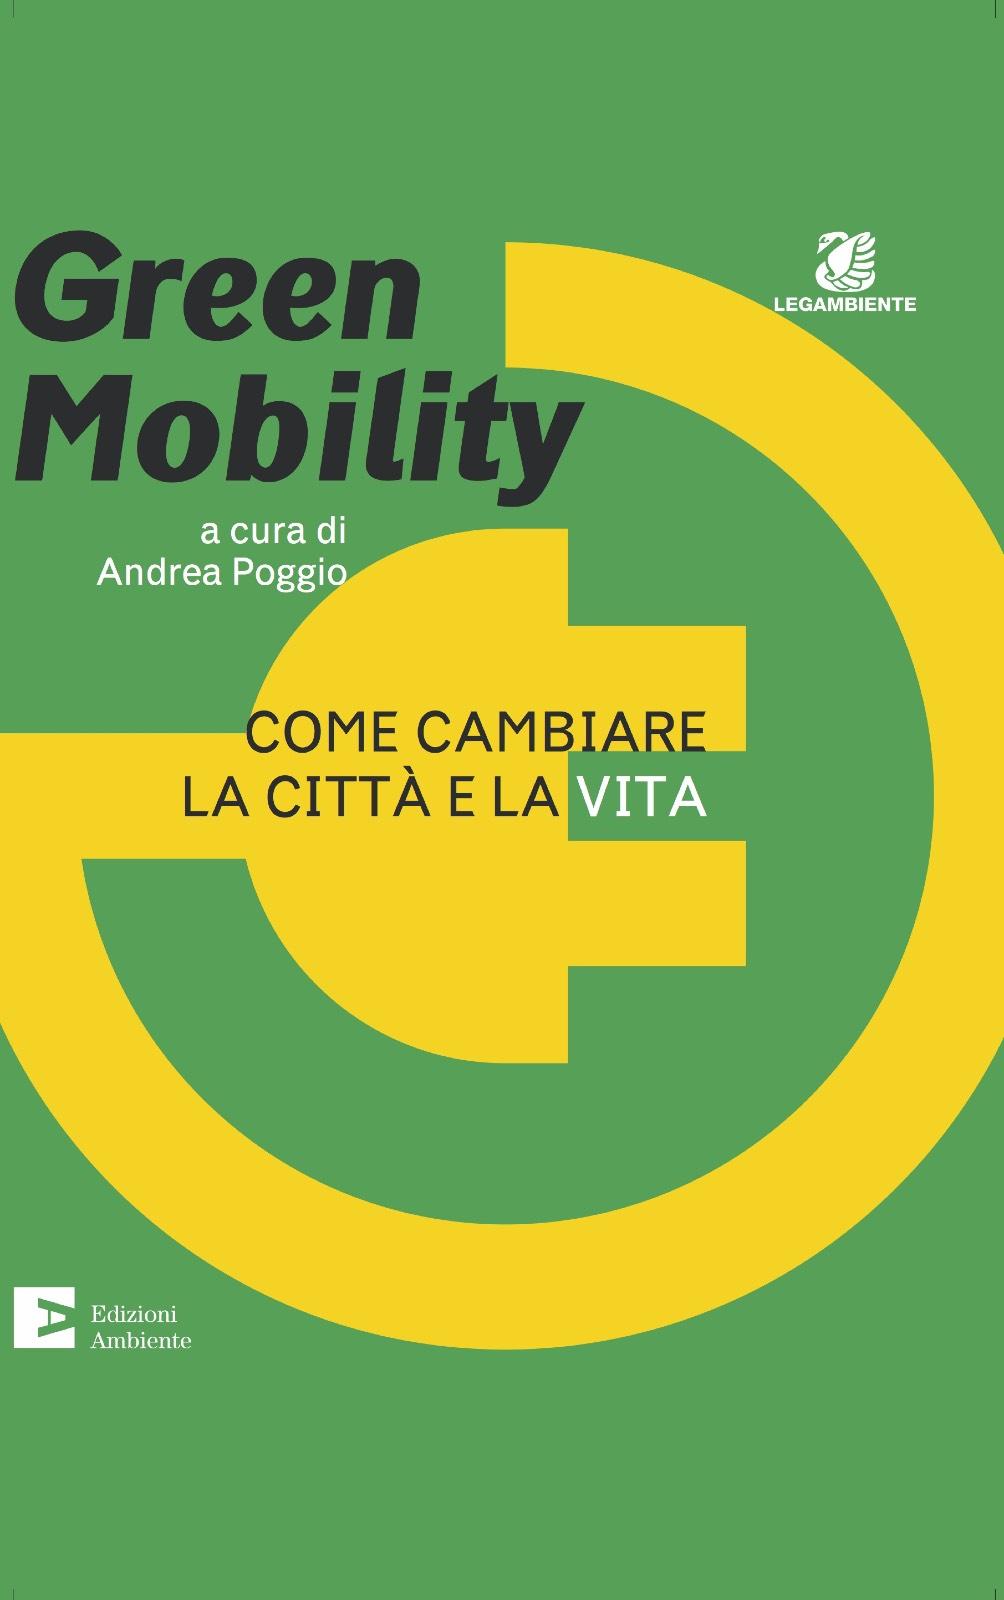 Mobilità sostenibile nel welfare aziendale www.viviconstile.